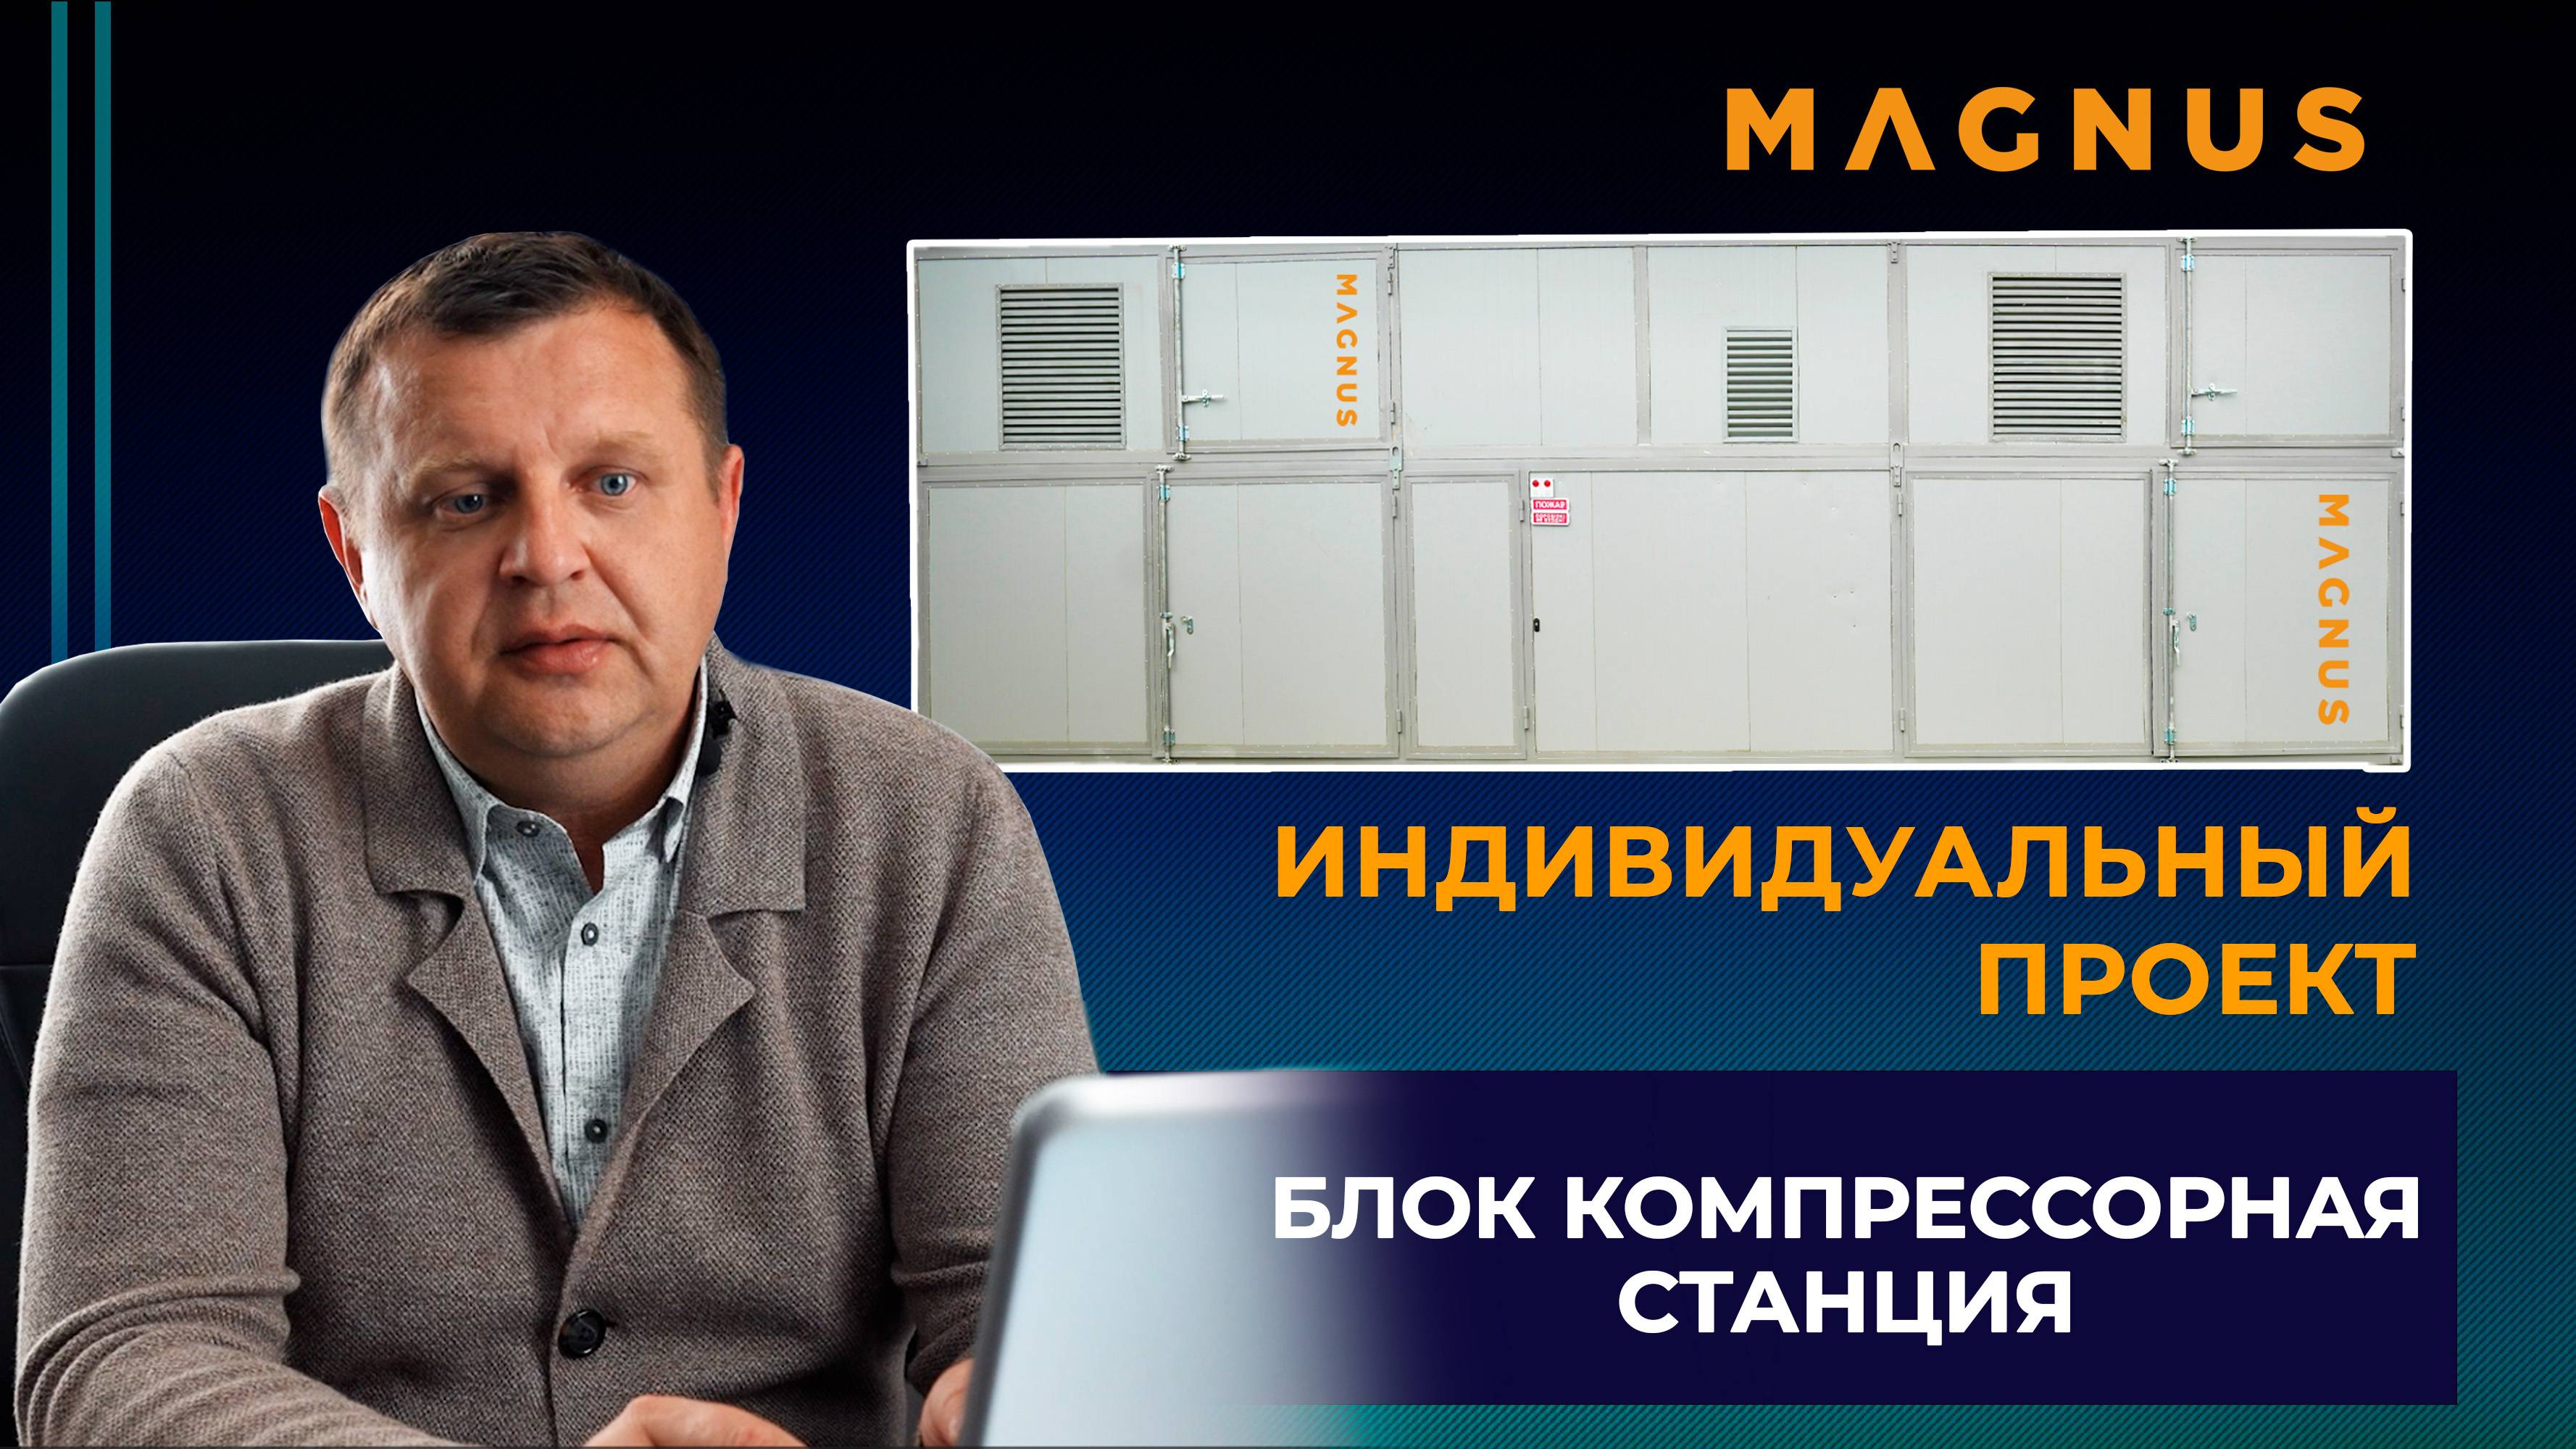 Индивидуальный проект - блочно-модульная компрессорная станция бренда "Magnus".